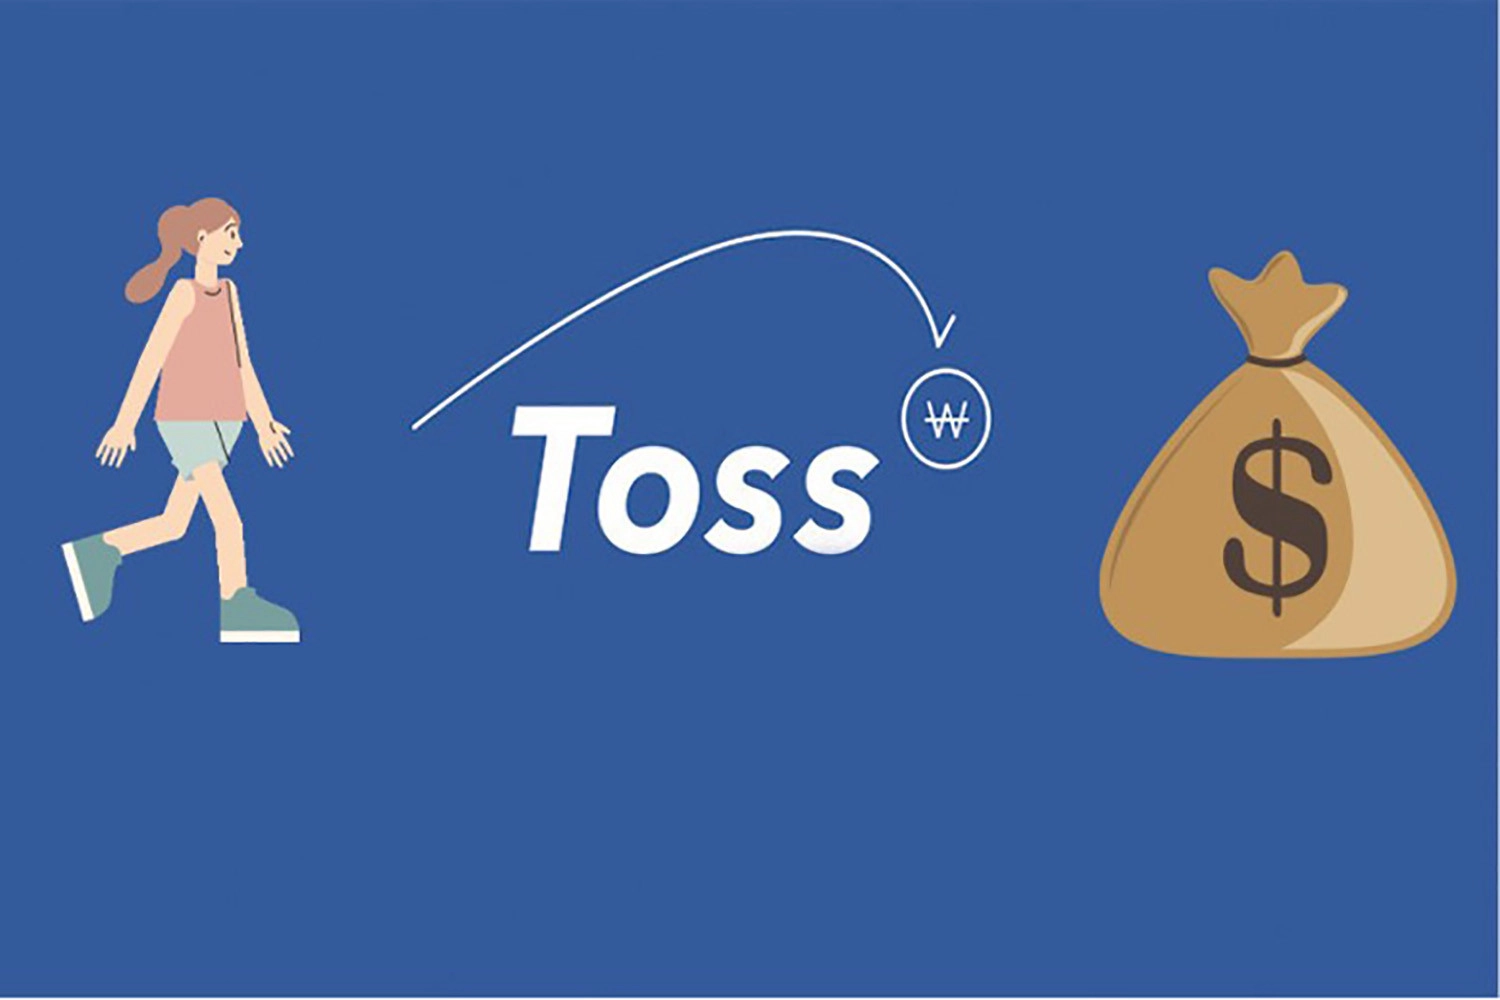 Toss – App đi dạo dò xét chi phí online